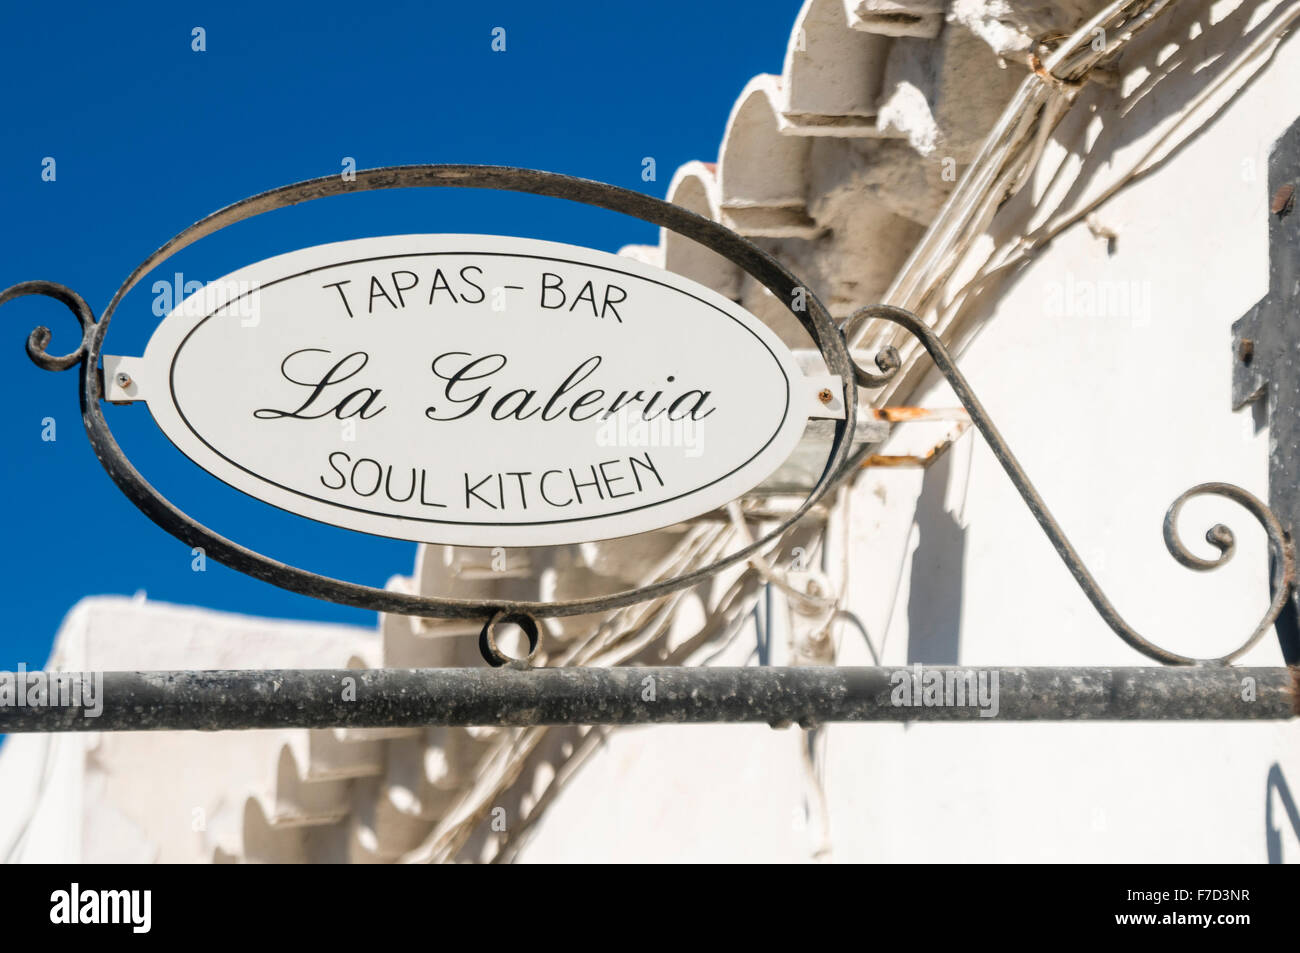 Inscrivez-vous à l'extérieur d'un bar à tapas dans une ville espagnole "La Galeria" soul kitchen Banque D'Images